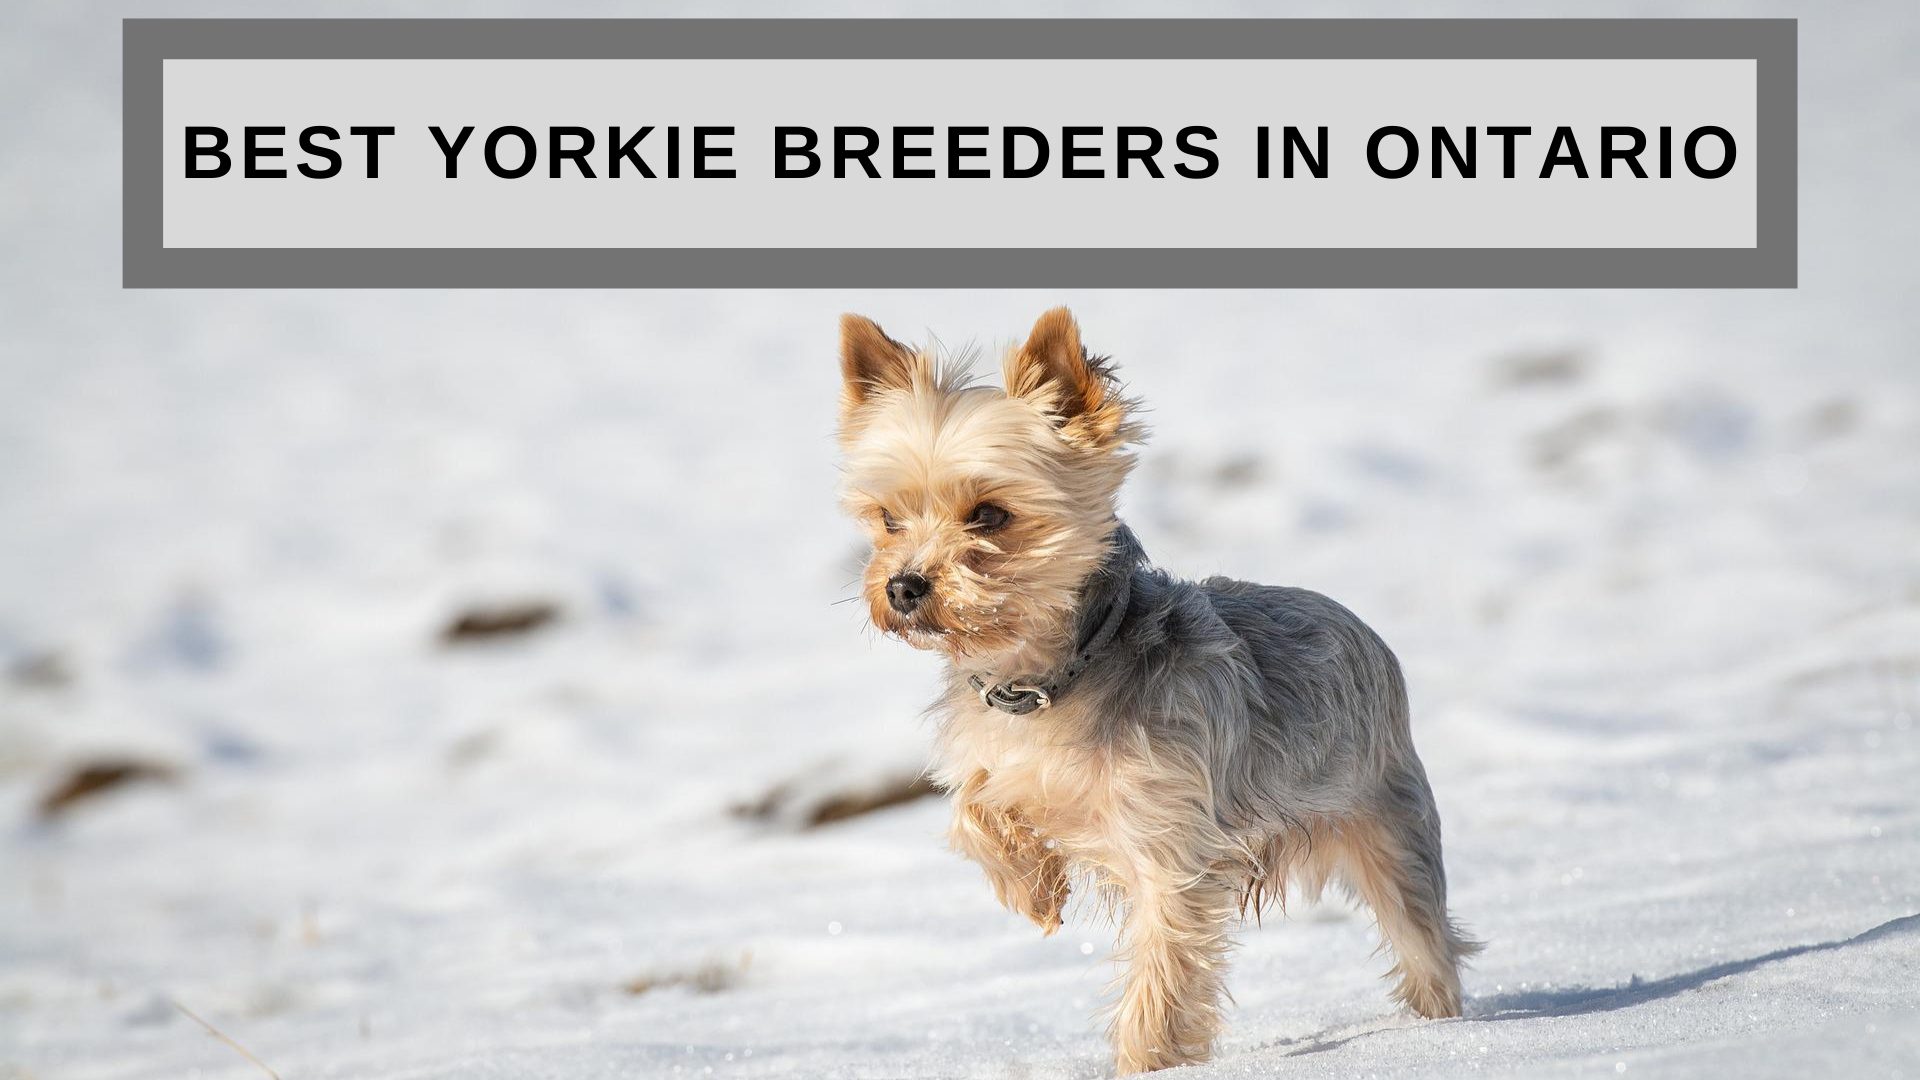 Best Yorkie Breeders in Ontario